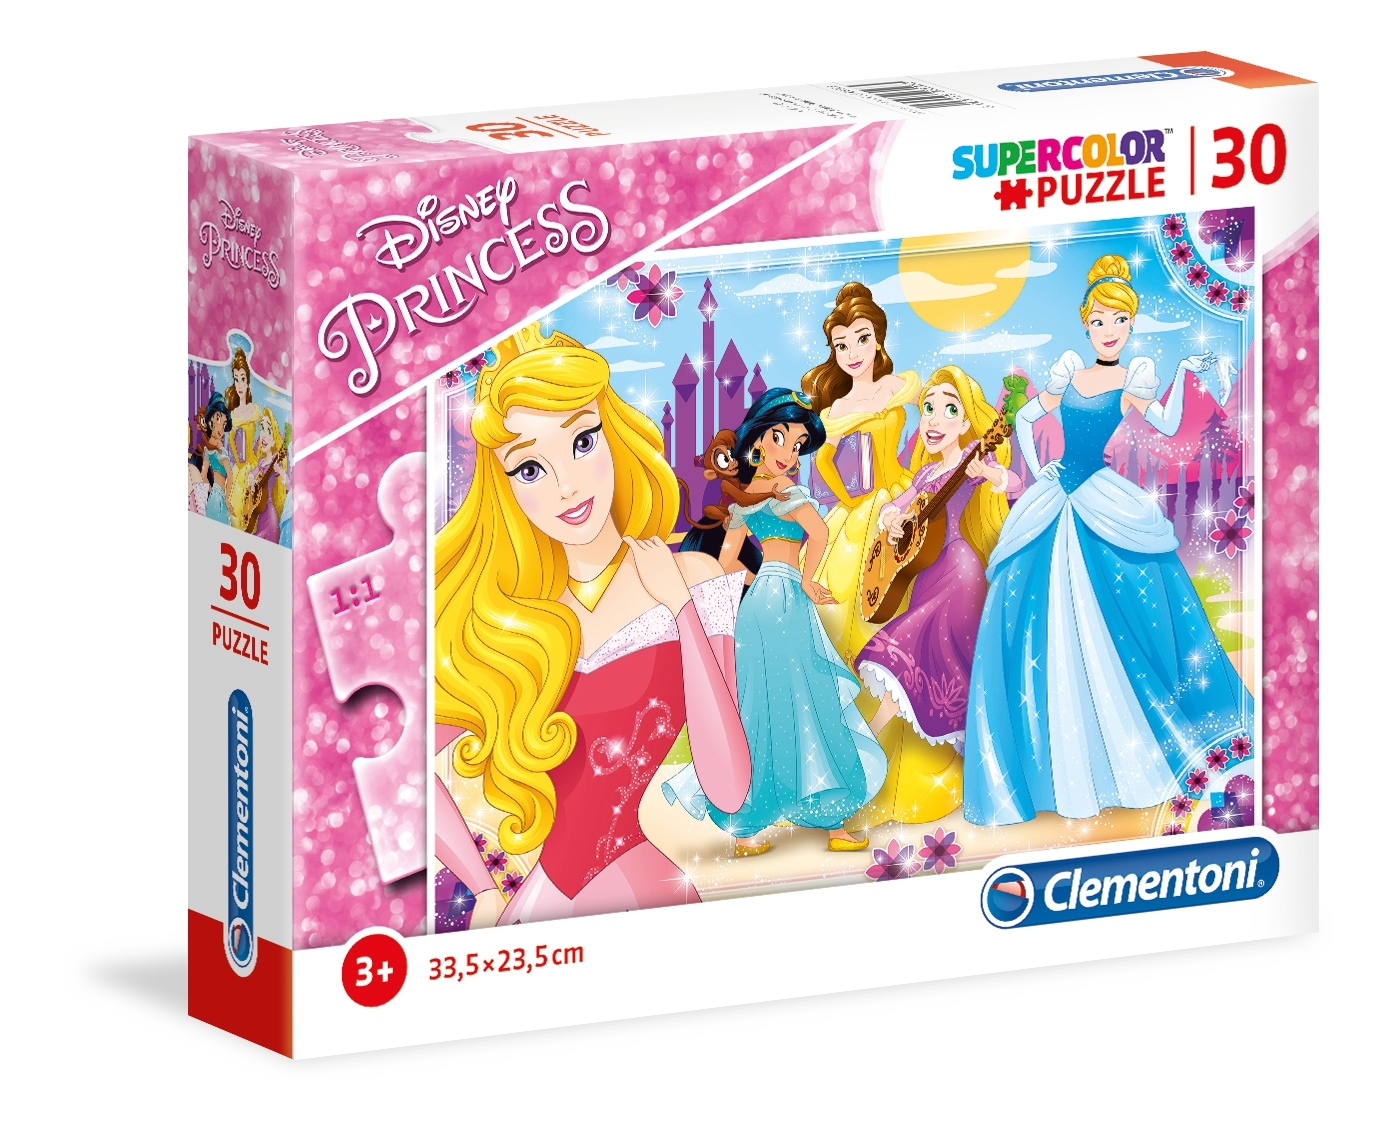 Clementoni Puzzel Supercolor Puzzle Prinsessen 30 Stukjes